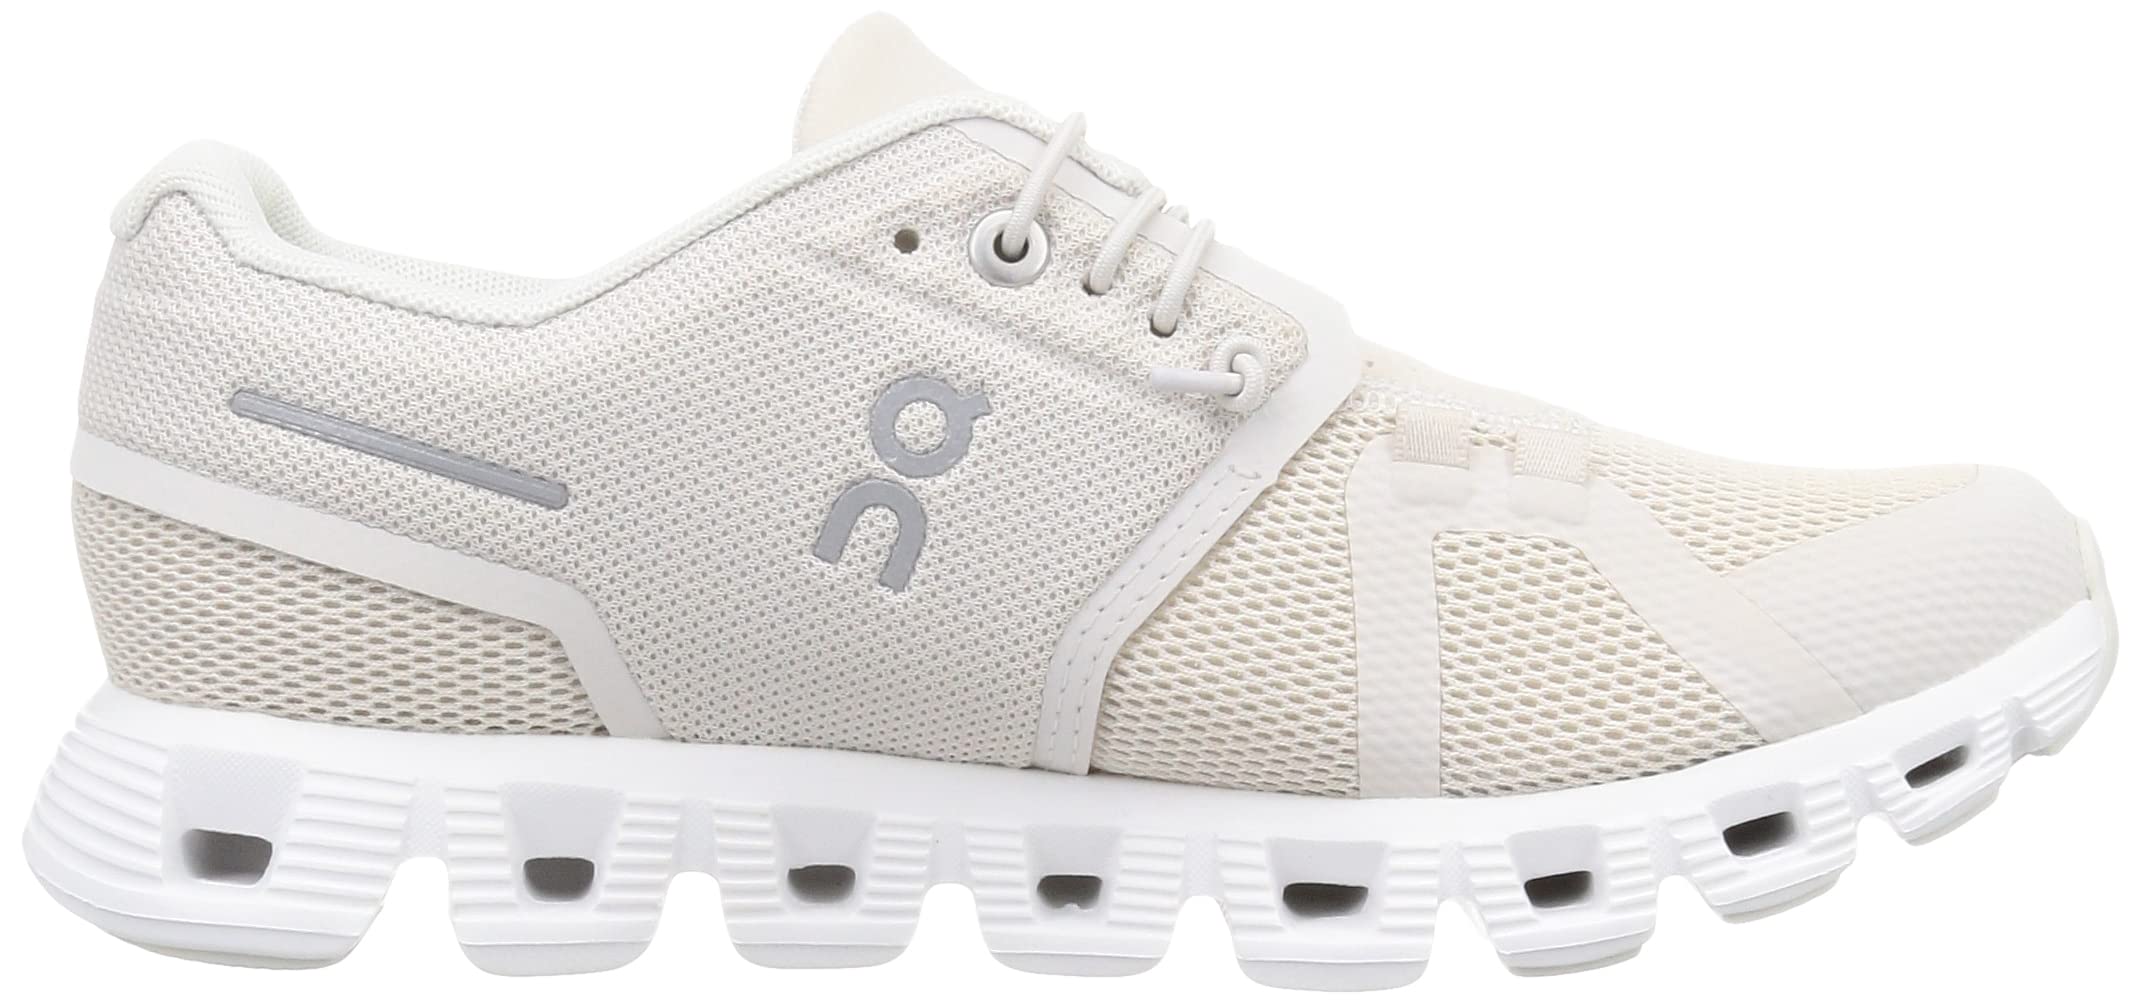 On Women's Cloud 5 Sneakers, Pearl/White, 8.5 Medium US